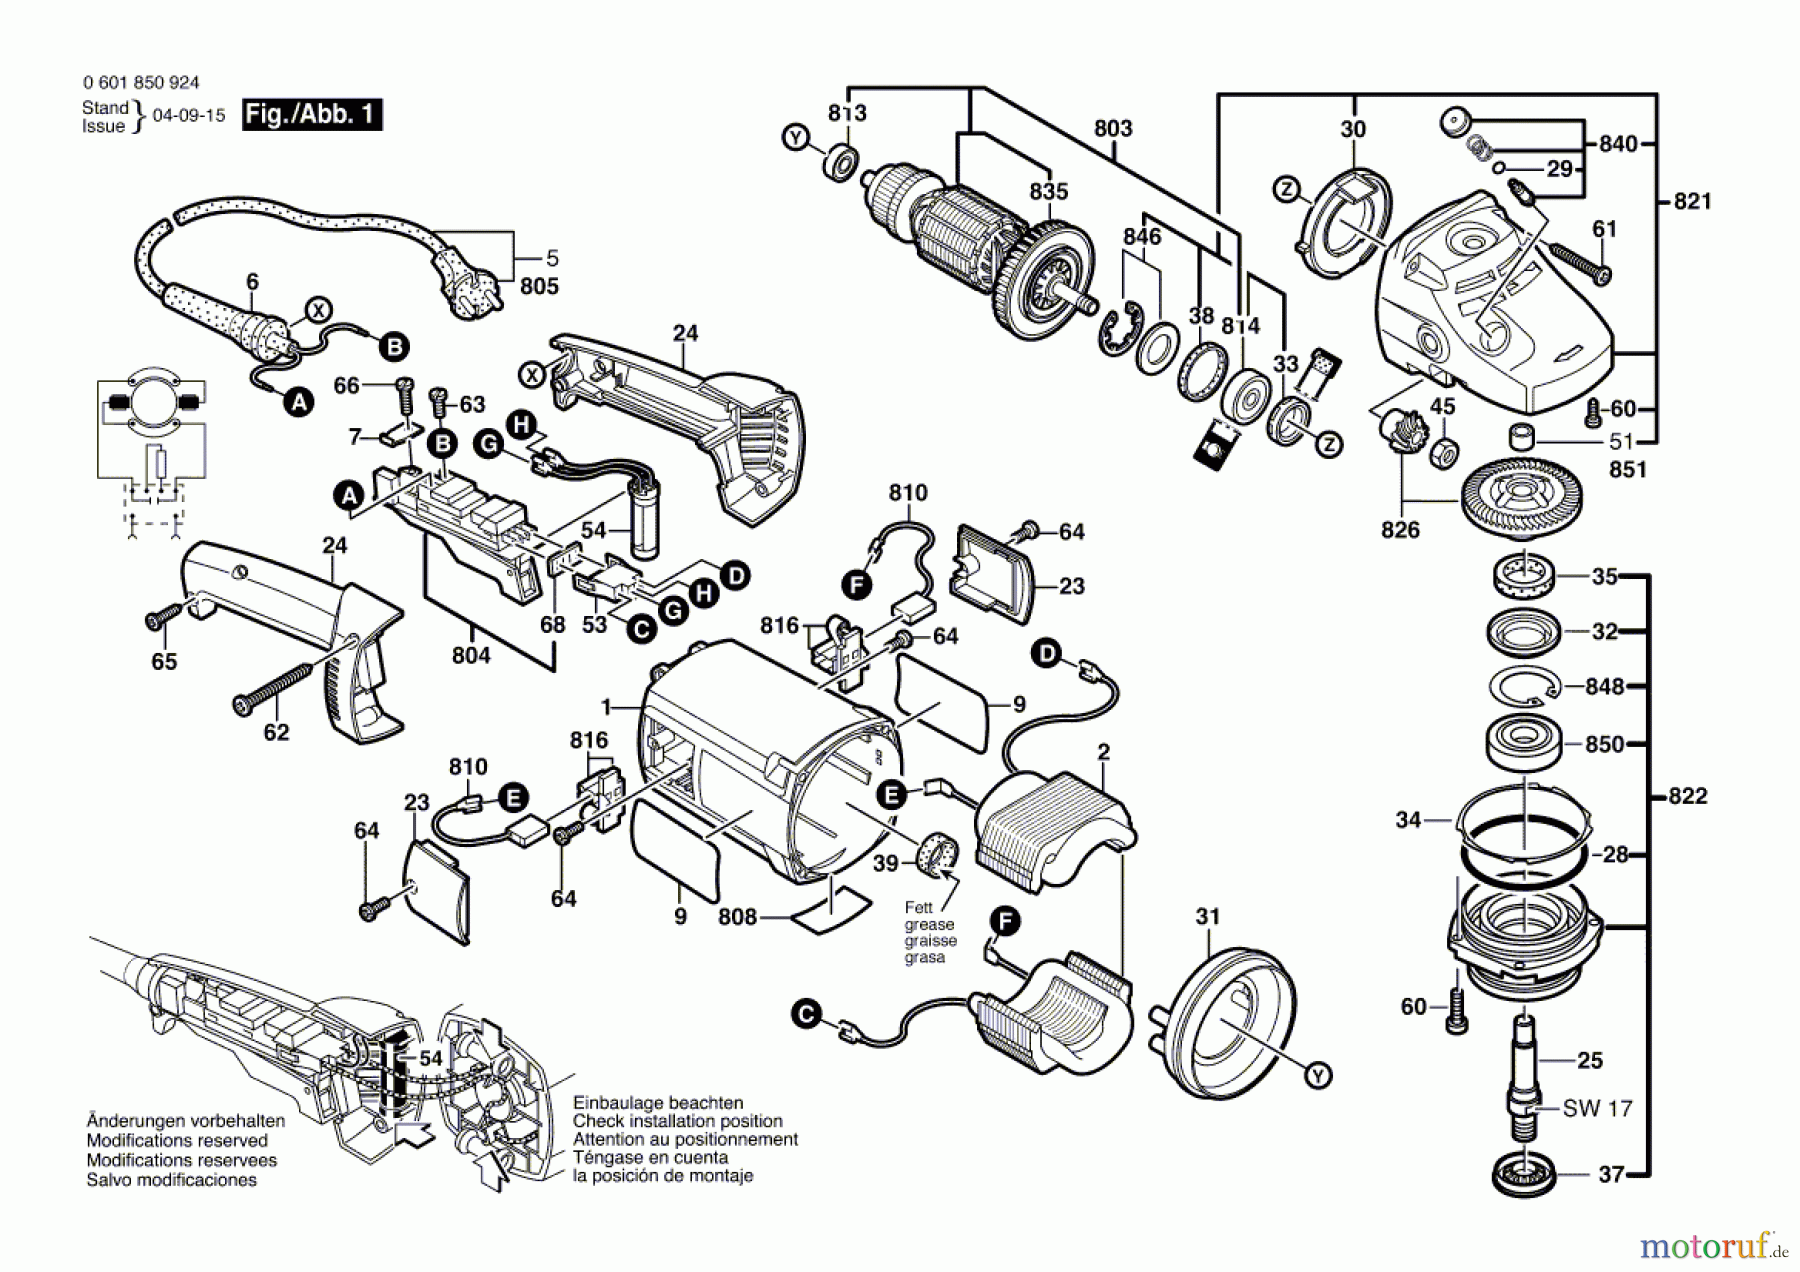  Bosch Werkzeug Winkelschleifer GWS 2000-230 JH Seite 1